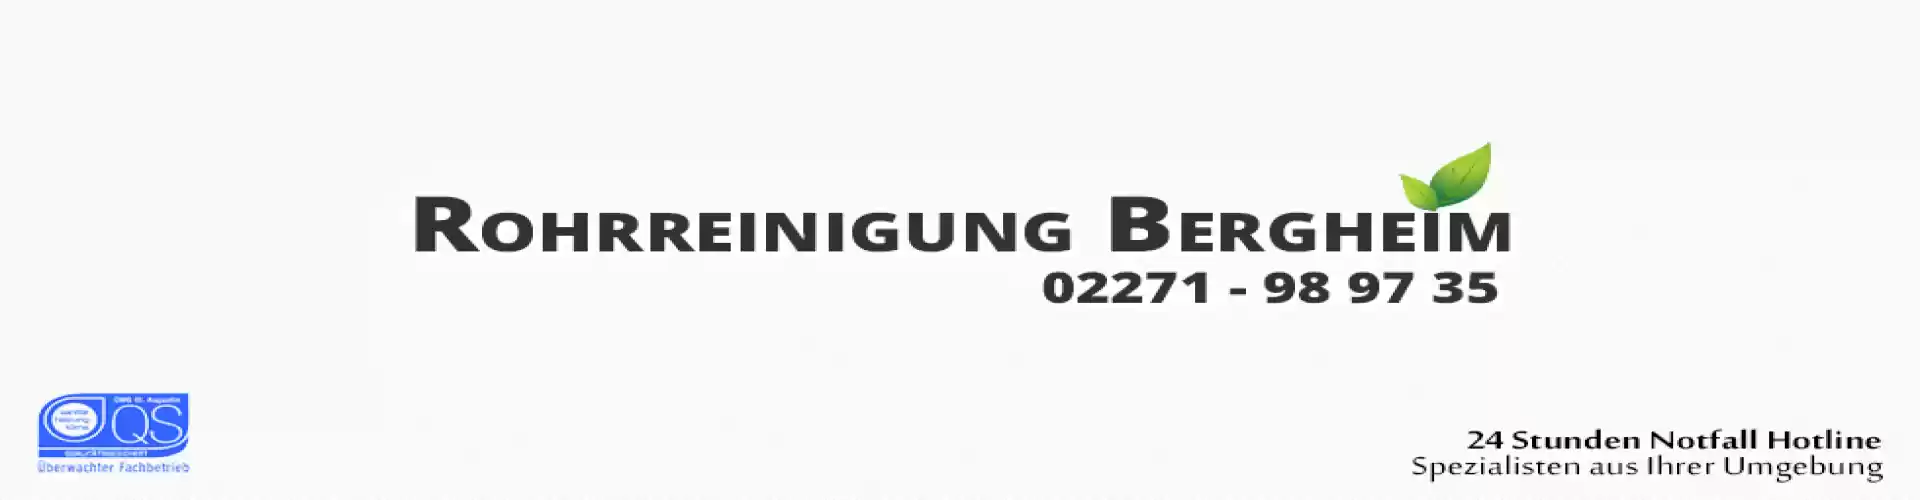 Rohrreinigung Bergheim